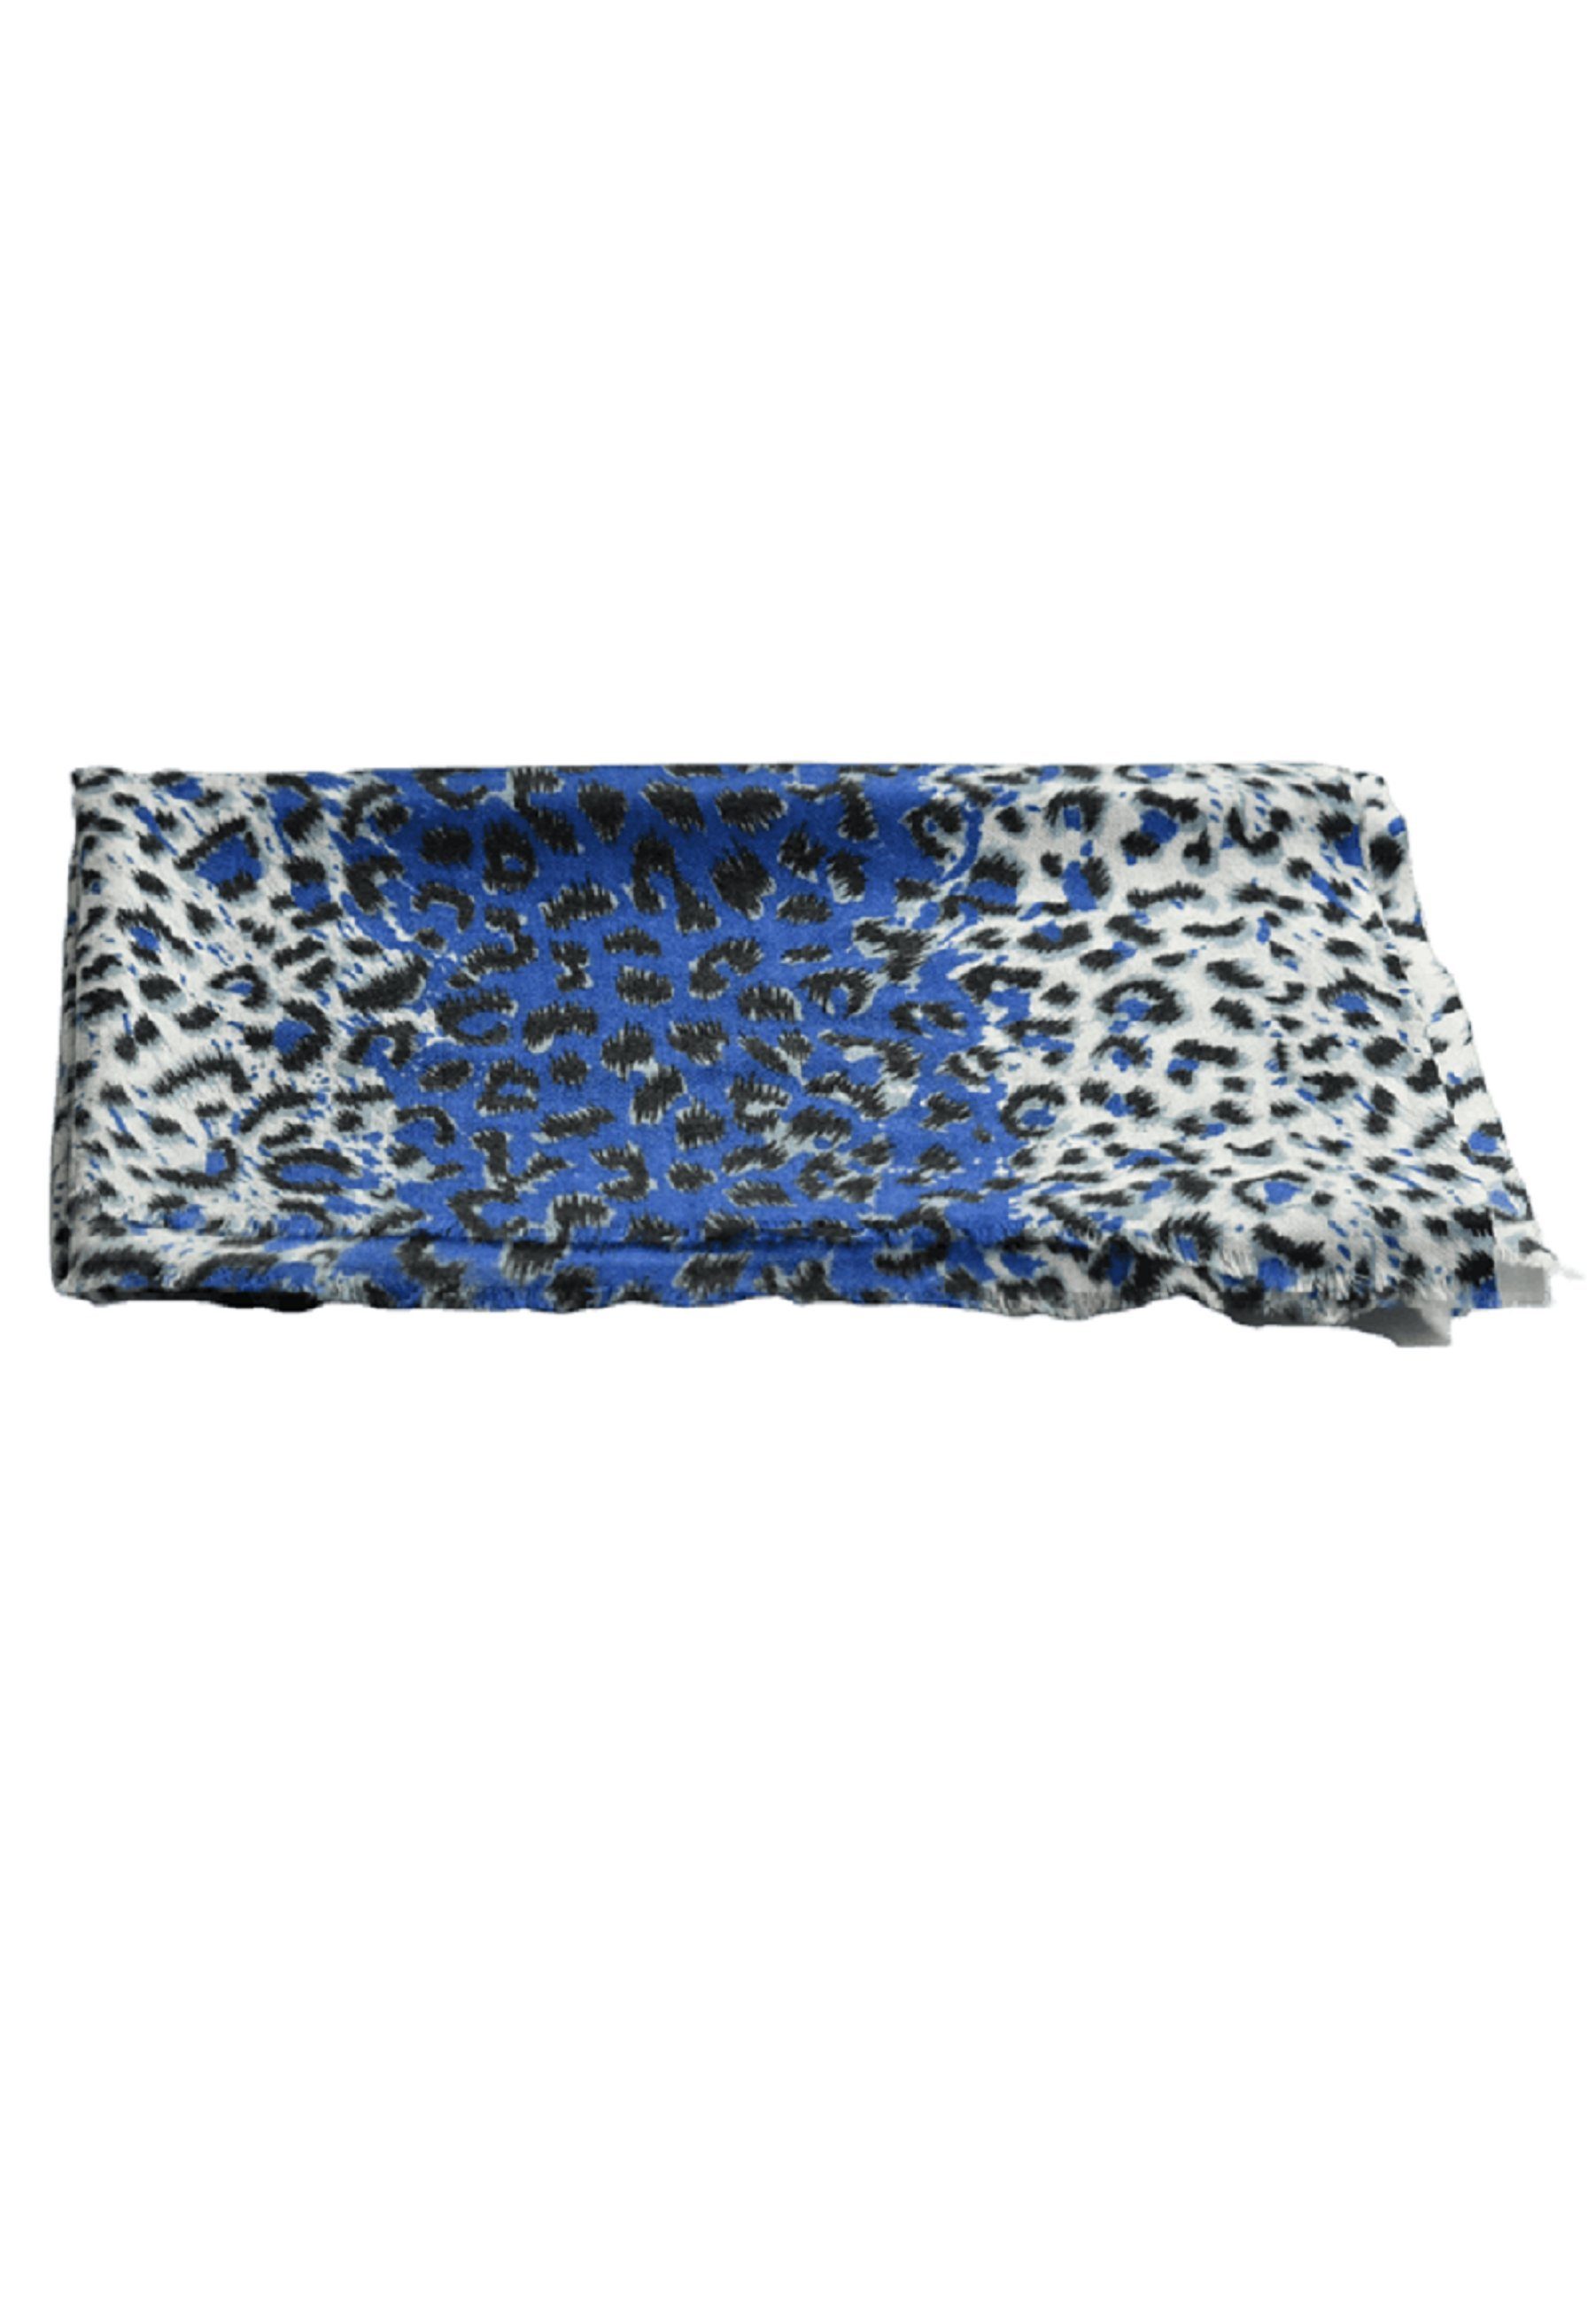 Leopardendruck, mit Schurwollen- Fransen Seidenmix Schal, blau Wollschal Chilli & Blue Home Bedruckter